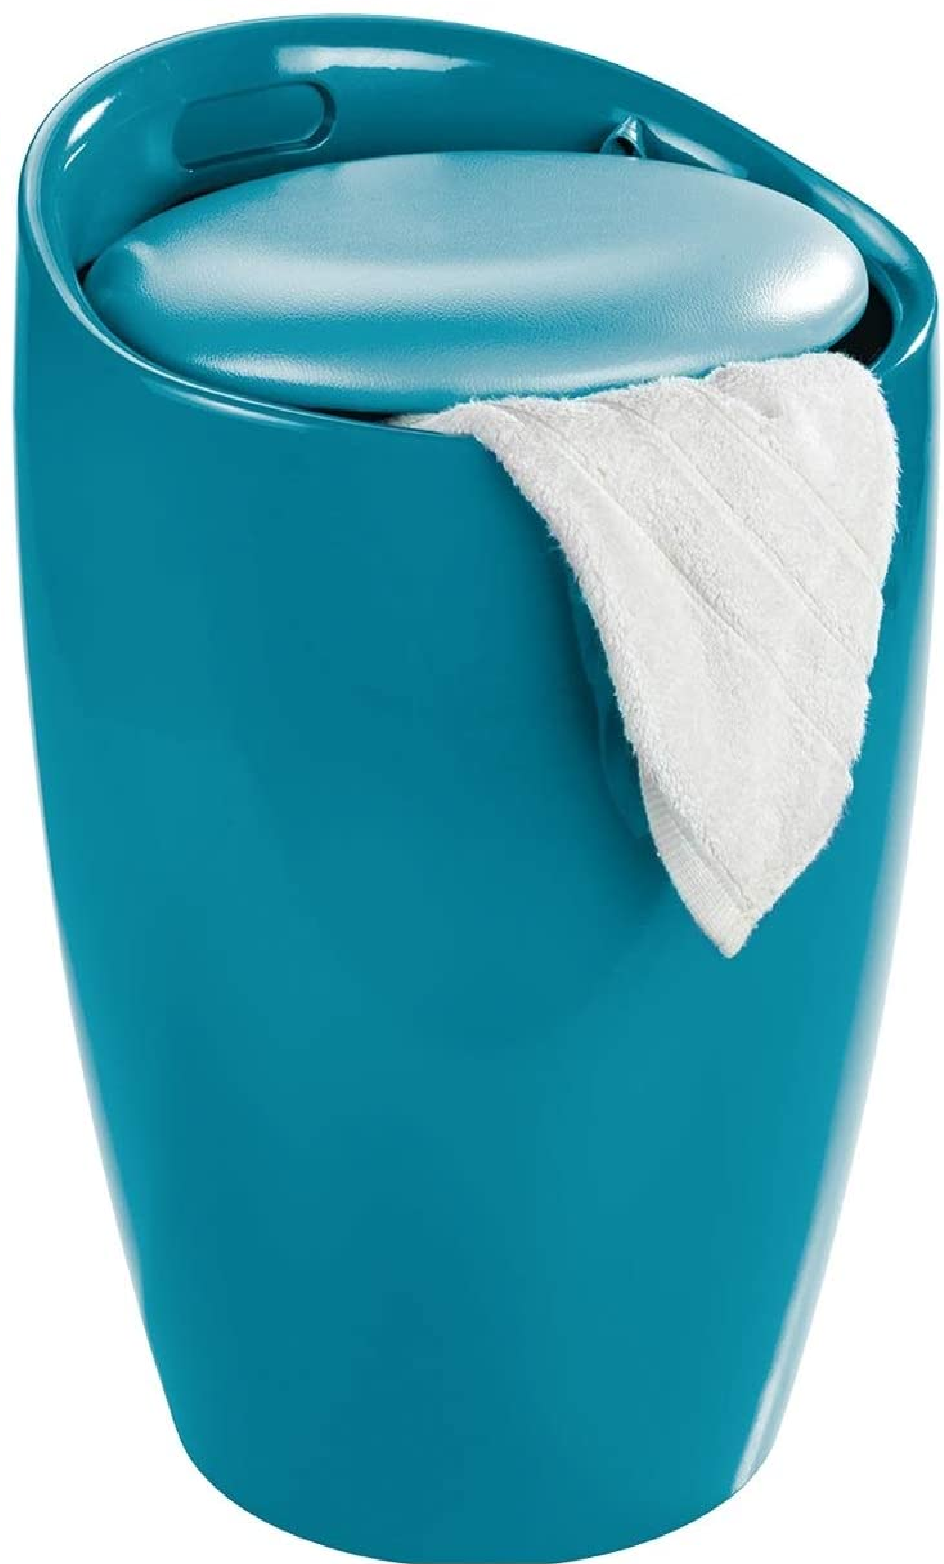 Hocker Candy Petrol, mit Wäschesack - Wohnhocker, Badhocker, Wäschesammler mit abnehmbarem Wäschesack, Kunststoff (ABS), 36 x 50.5 x 36 cm, Petrol